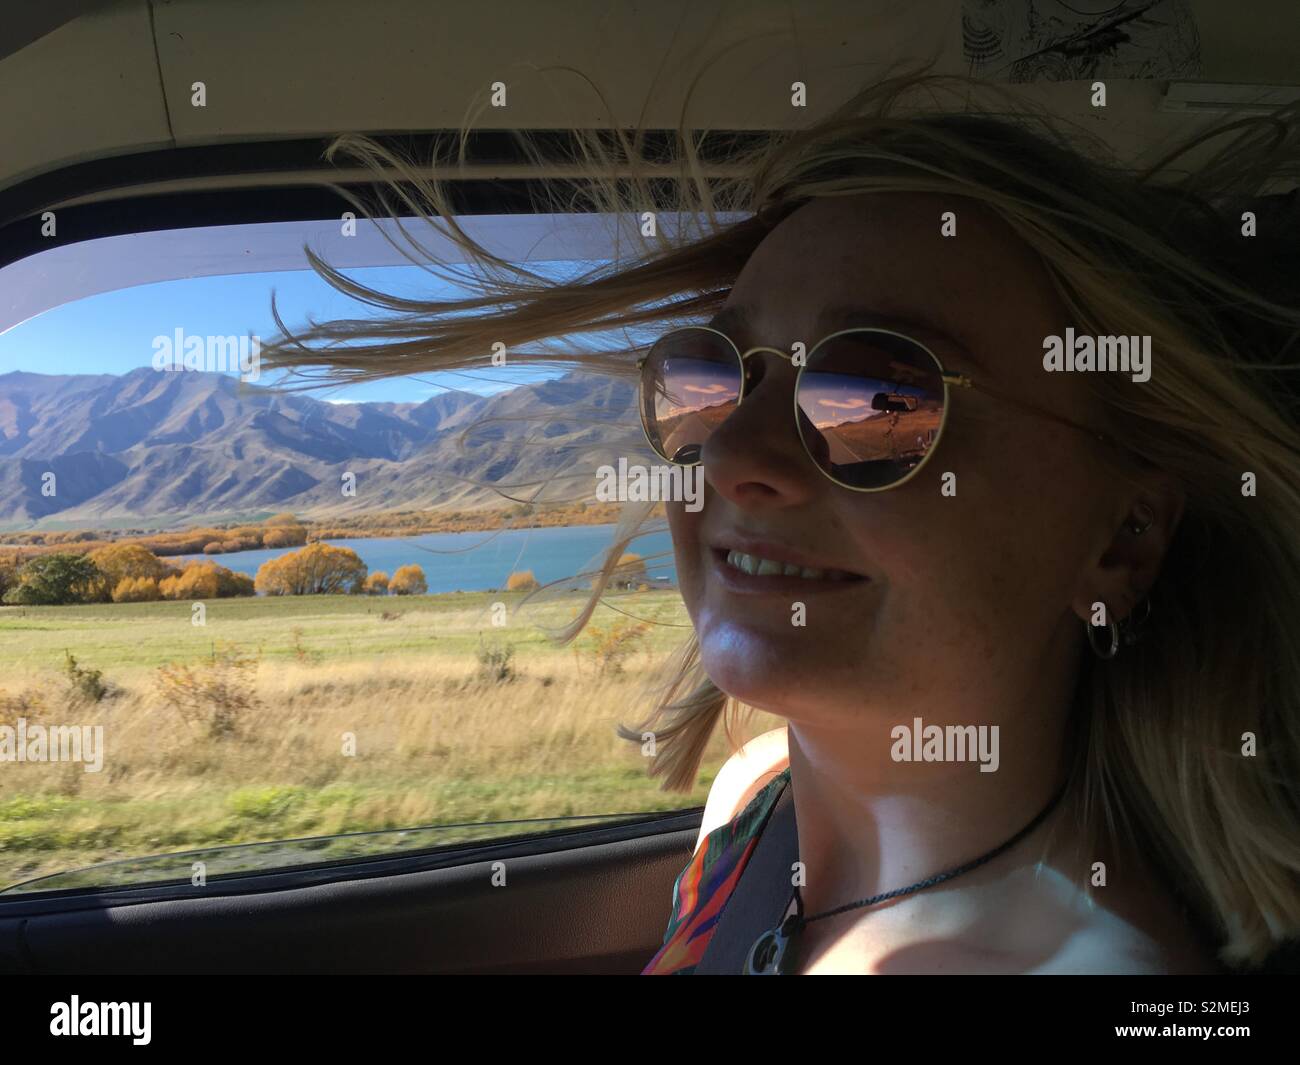 Bella ragazza la guida in campagna con il vento che soffia in aria - Scenic Nuova Zelanda paesaggio in background. Foto Stock